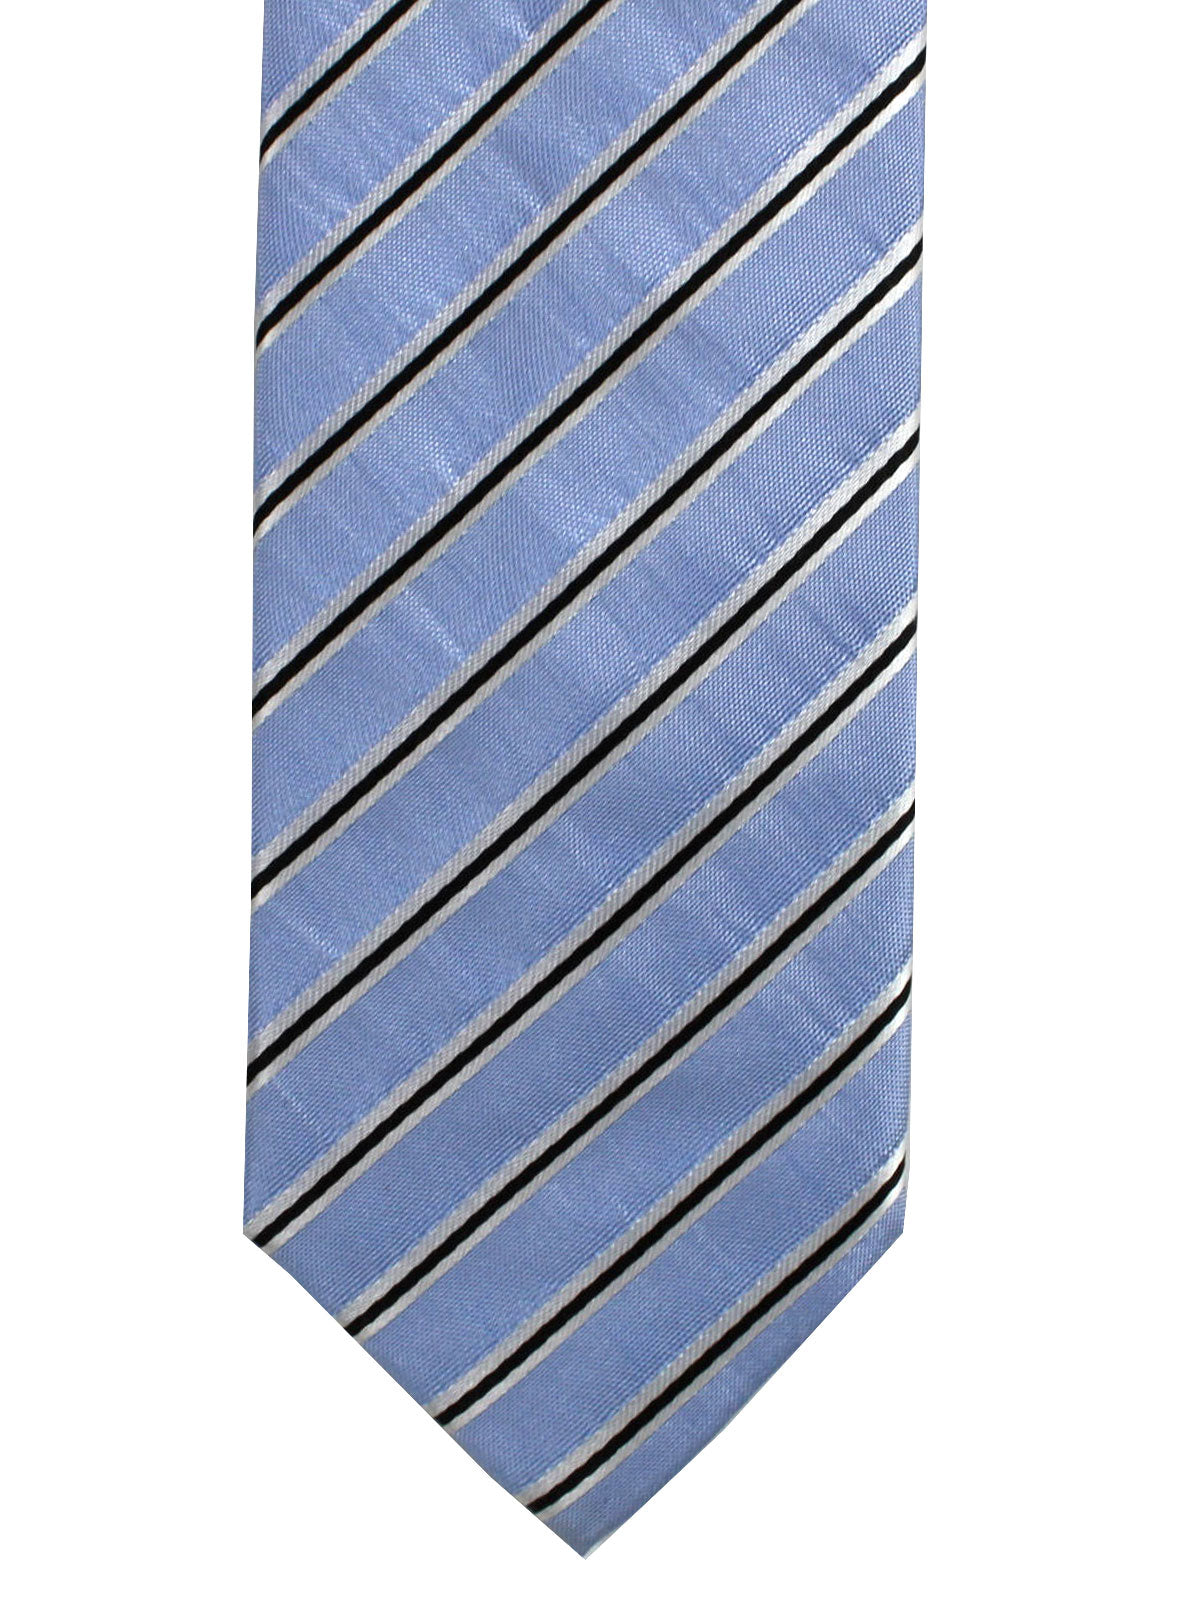 Prada Necktie Sky Blue Black Silver Stripes Design - Skinny Tie